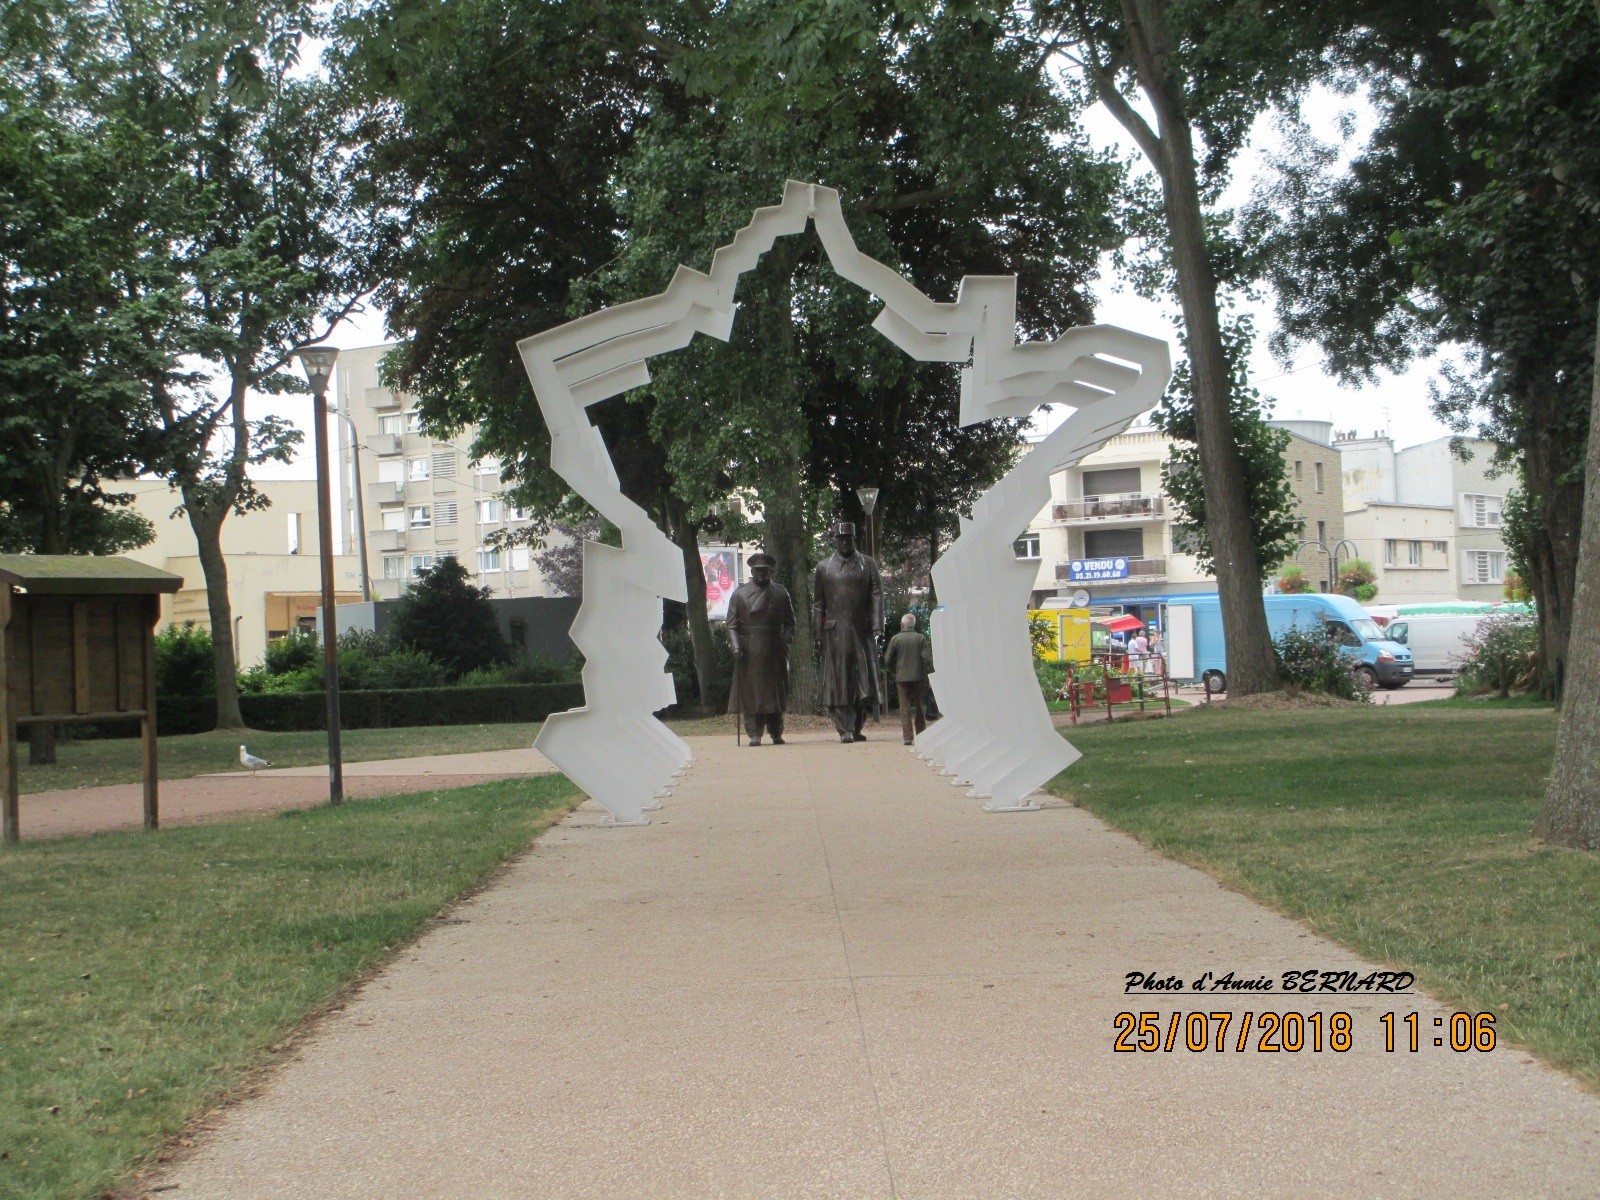 Une représentation de la France à l'entrée du parc Richelieu de Calais